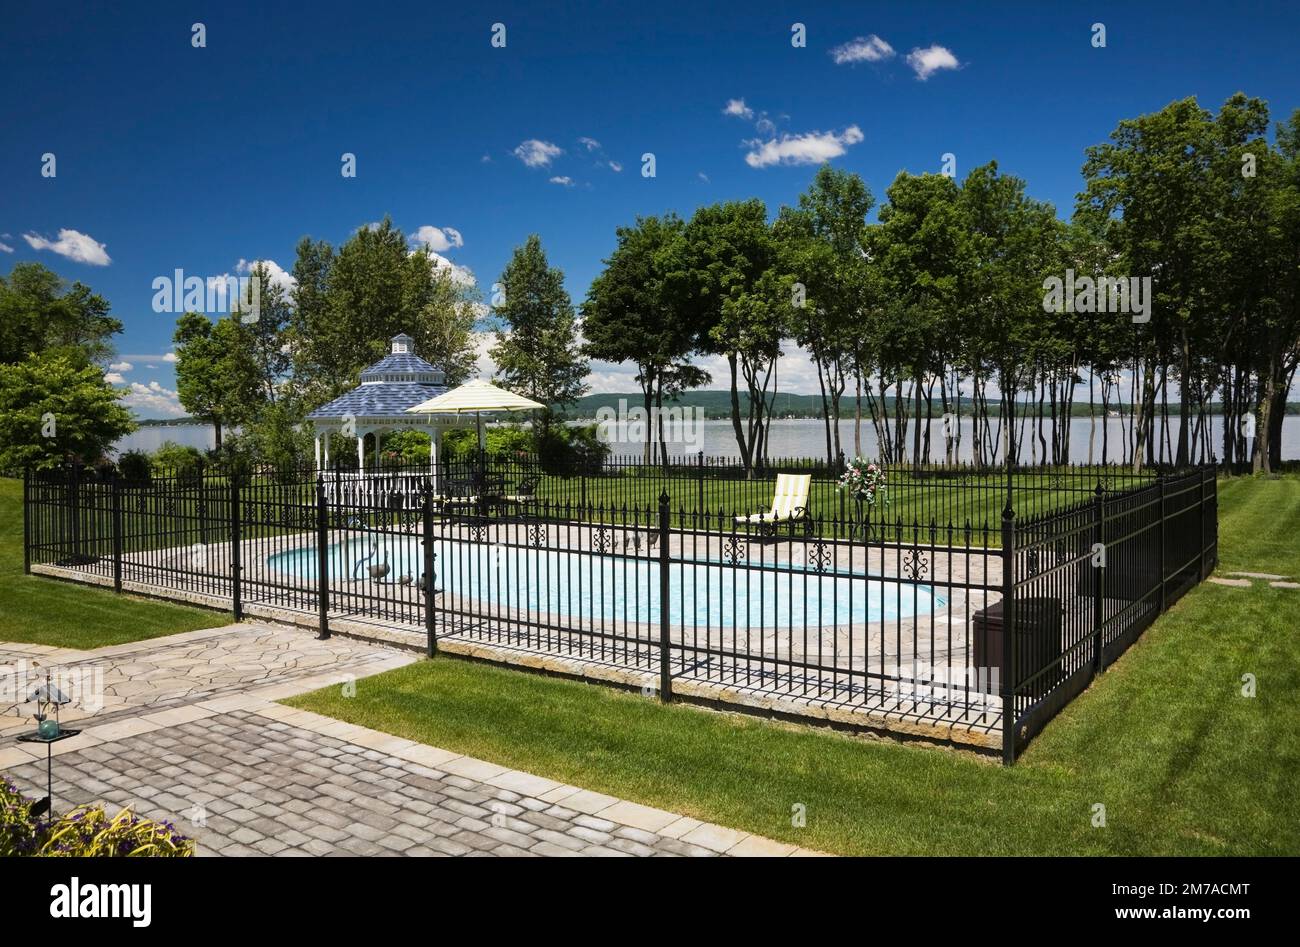 Im Sommer befindet sich ein Swimmingpool im Freien, der von einem schwarzen schmiedeeisernen Zaun umgeben ist. Stockfoto